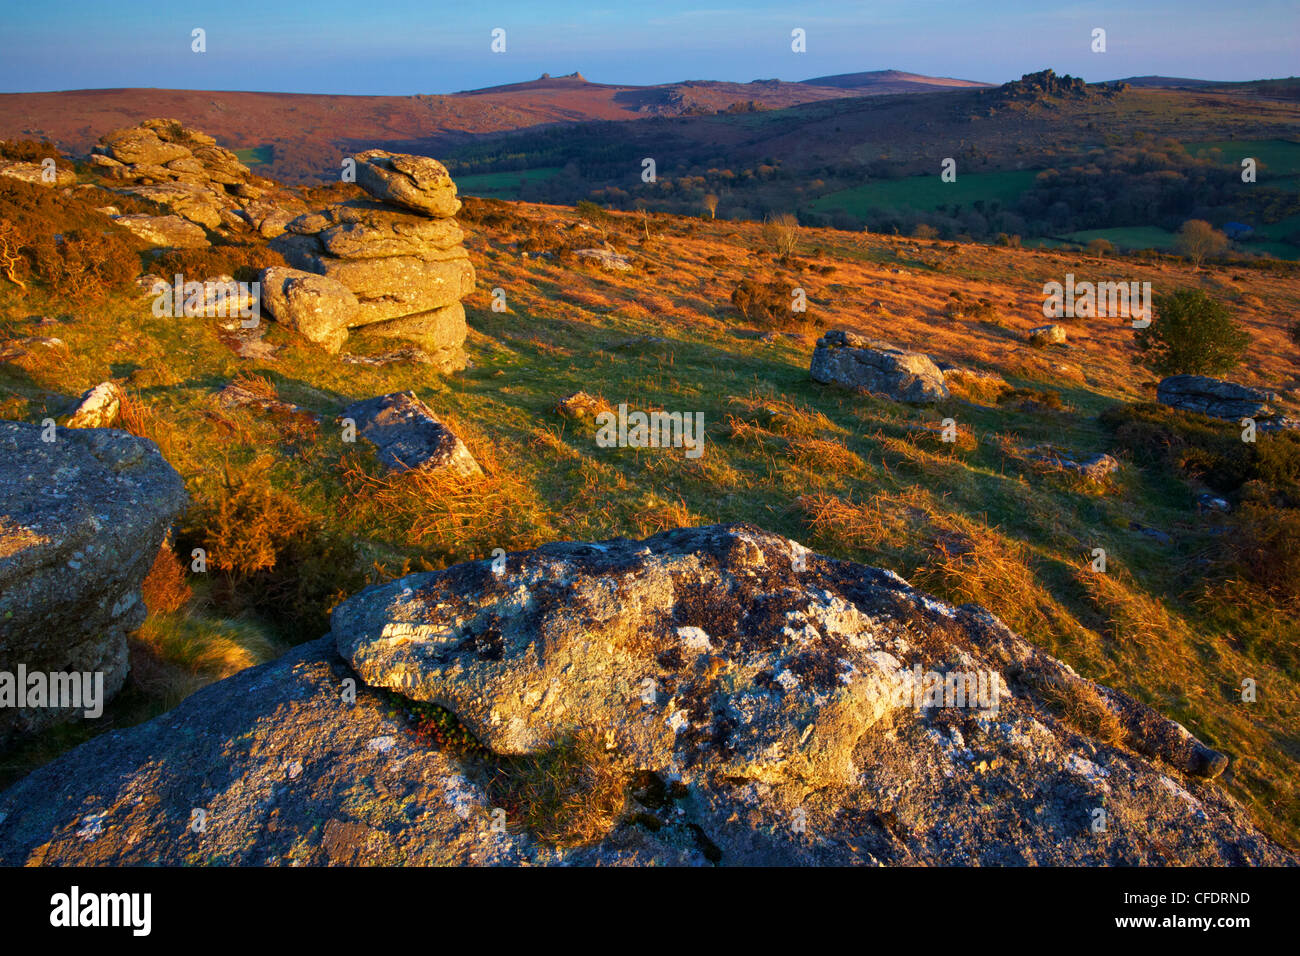 Una scena ripresa nei pressi di Bowerman del naso, Dartmoor Devon, Inghilterra, Regno Unito, Europa Foto Stock